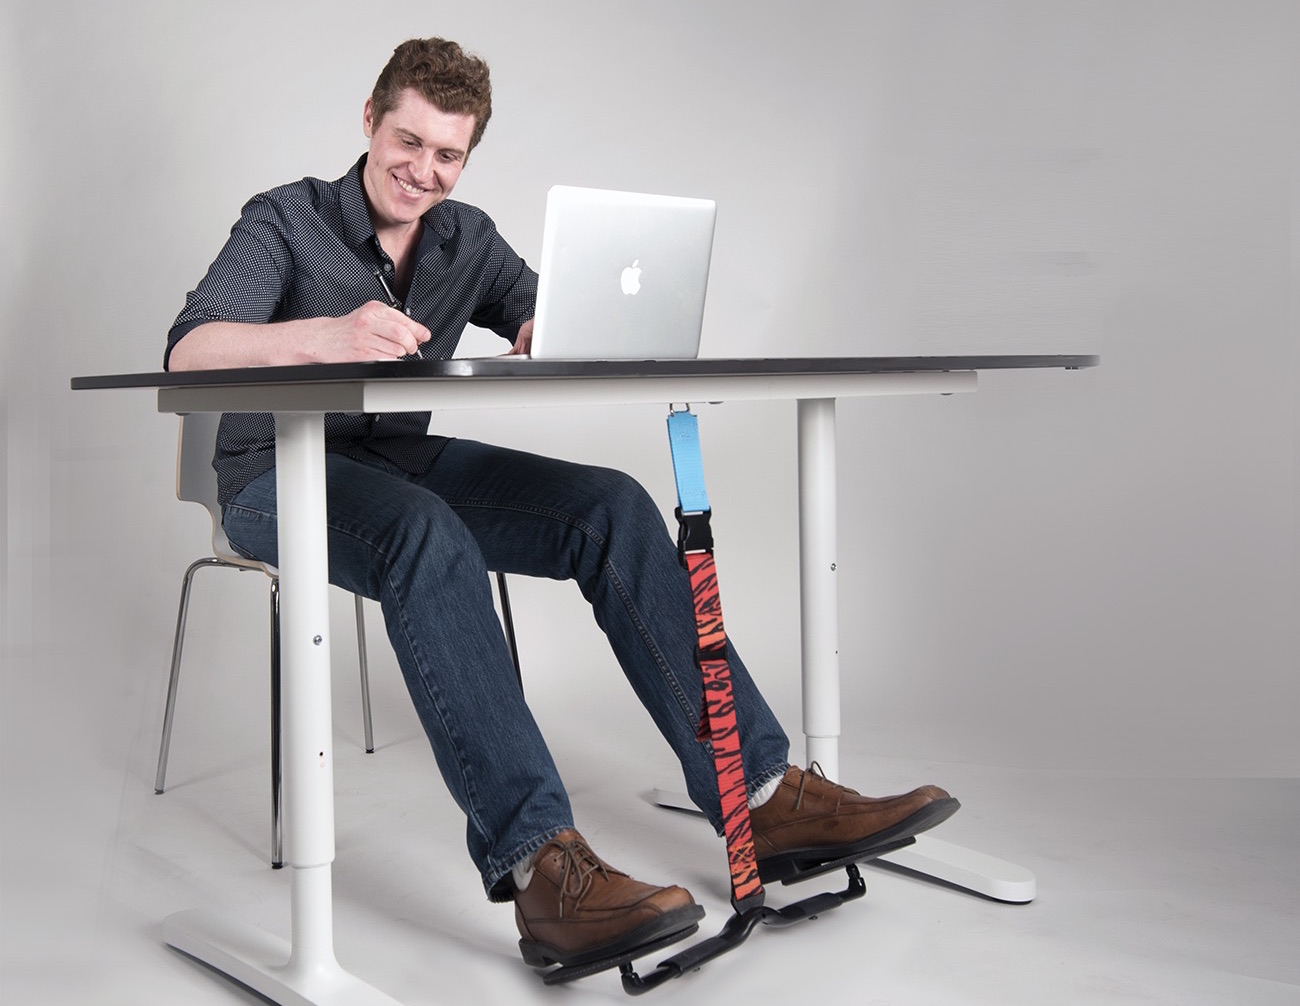 Rocking Foot Rest for Under Desk at Work - Foot Rest Under Desk for Office  Use, Ergonomic